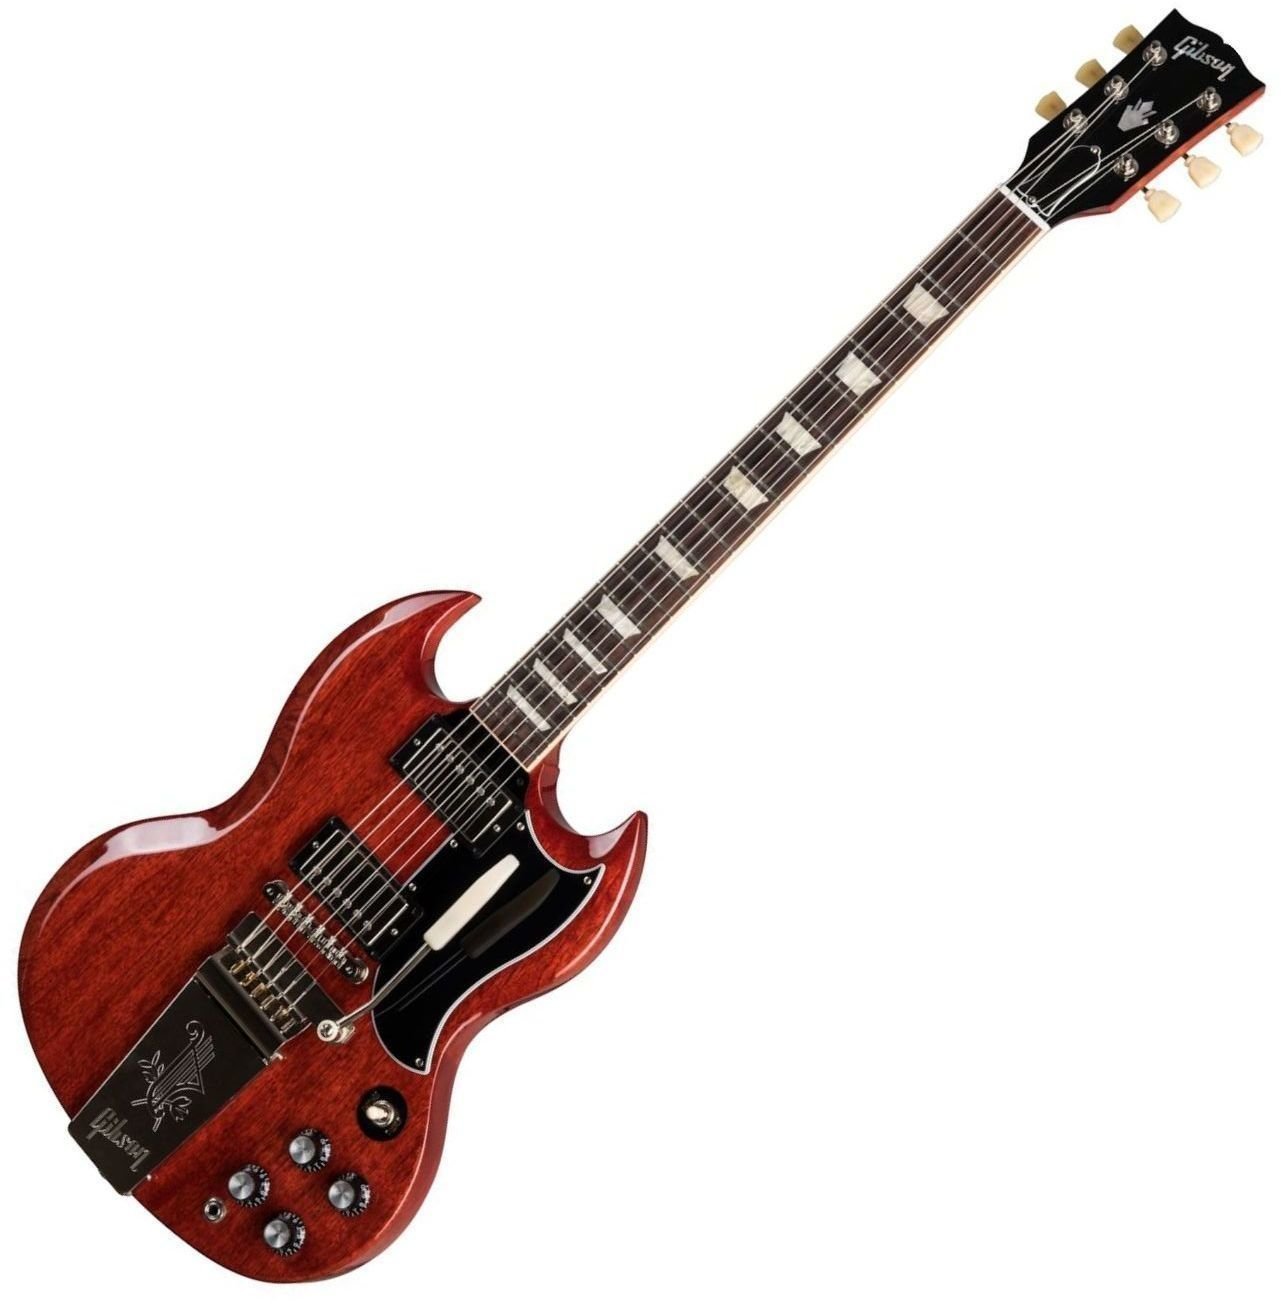 Ηλεκτρική Κιθάρα Gibson SG Standard 61 Maestro Vibrola Vintage Cherry